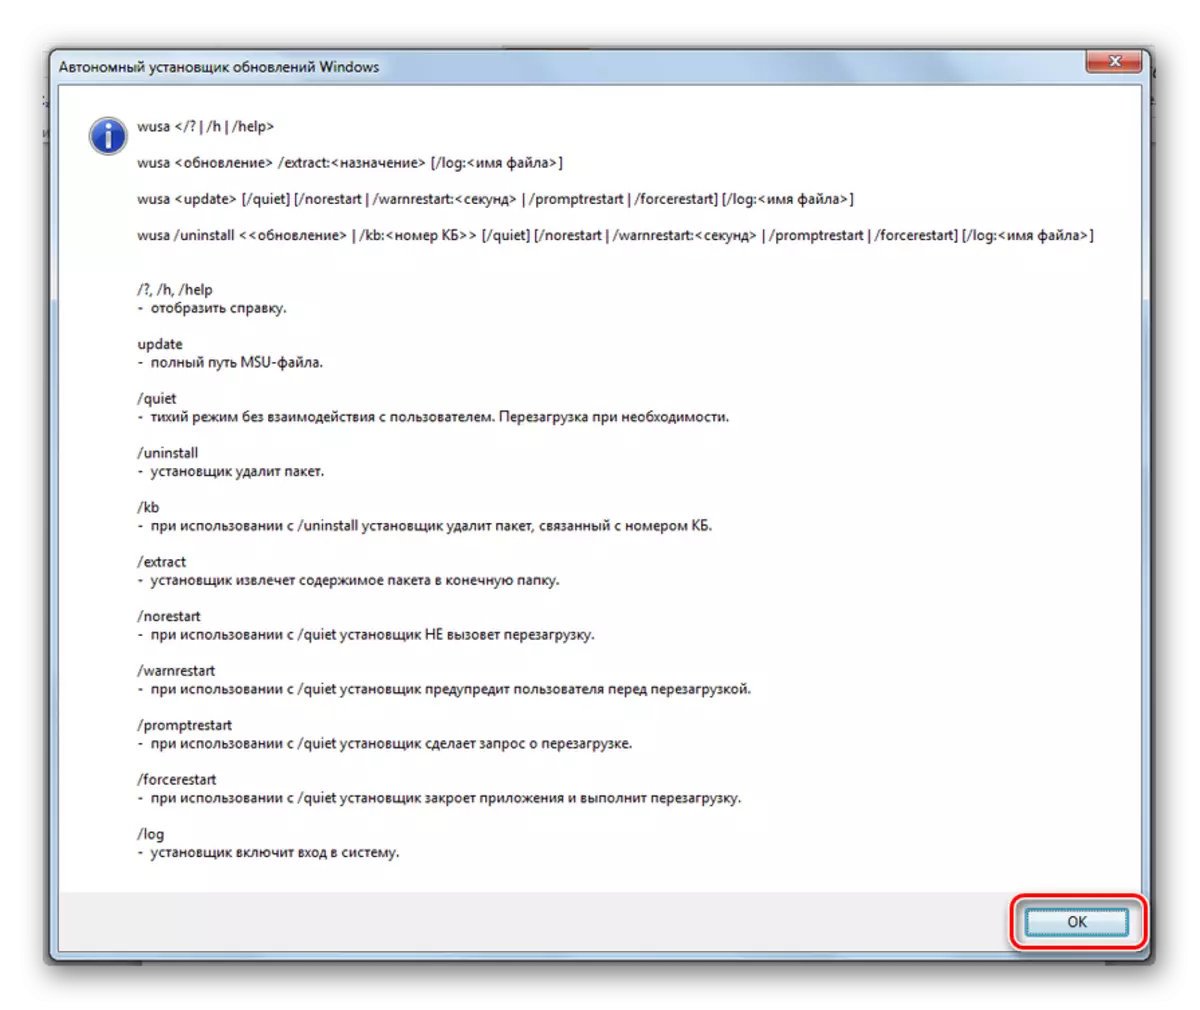 Lijst van autonome updateplaats-opdrachten in Windows 7